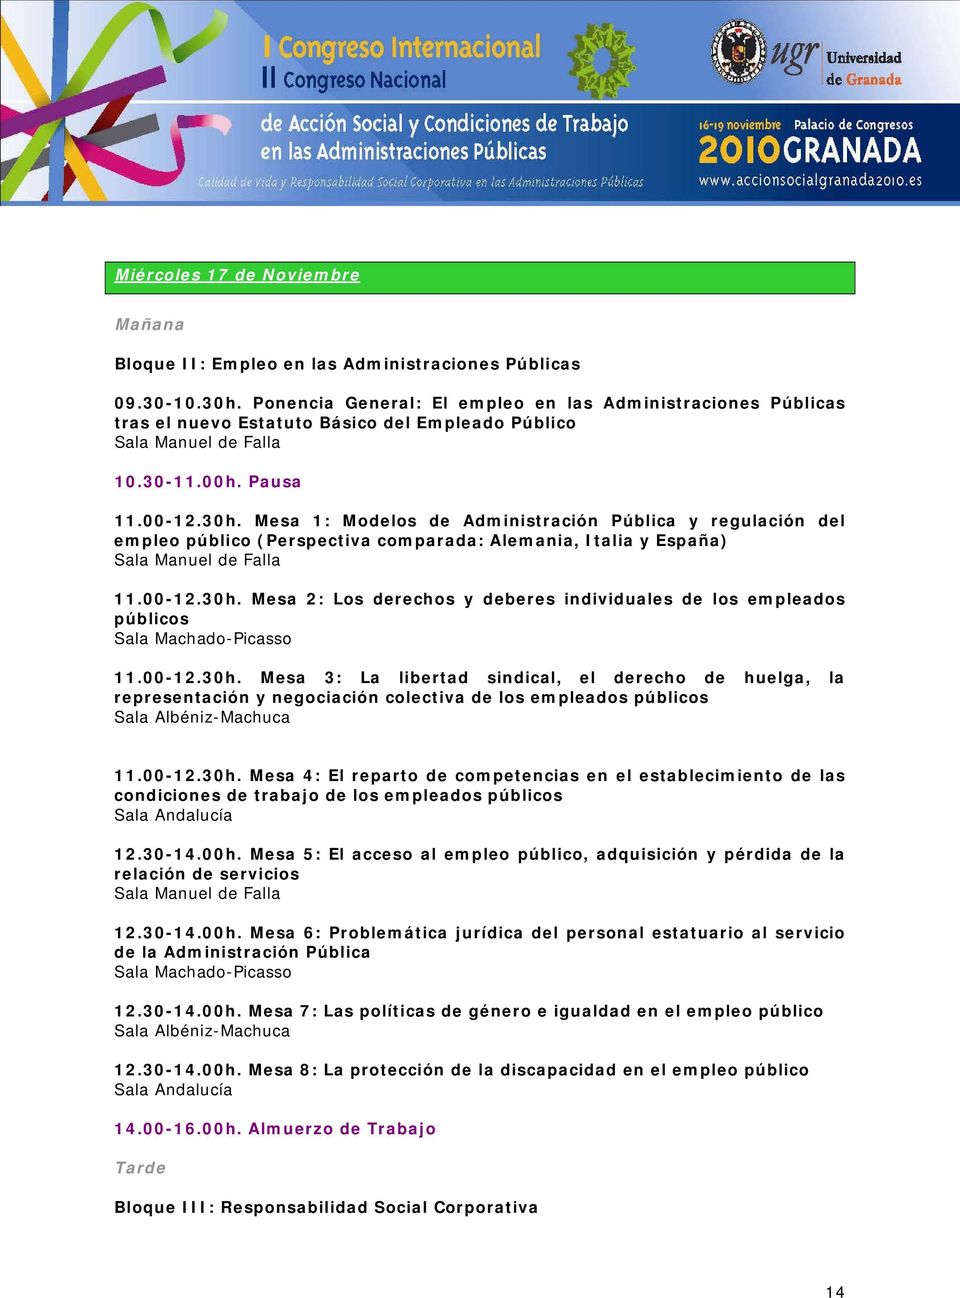 Mesa 1: Modelos de Administración Pública y regulación del empleo público (Perspectiva comparada: Alemania, Italia y España) 11.00-12.30h.